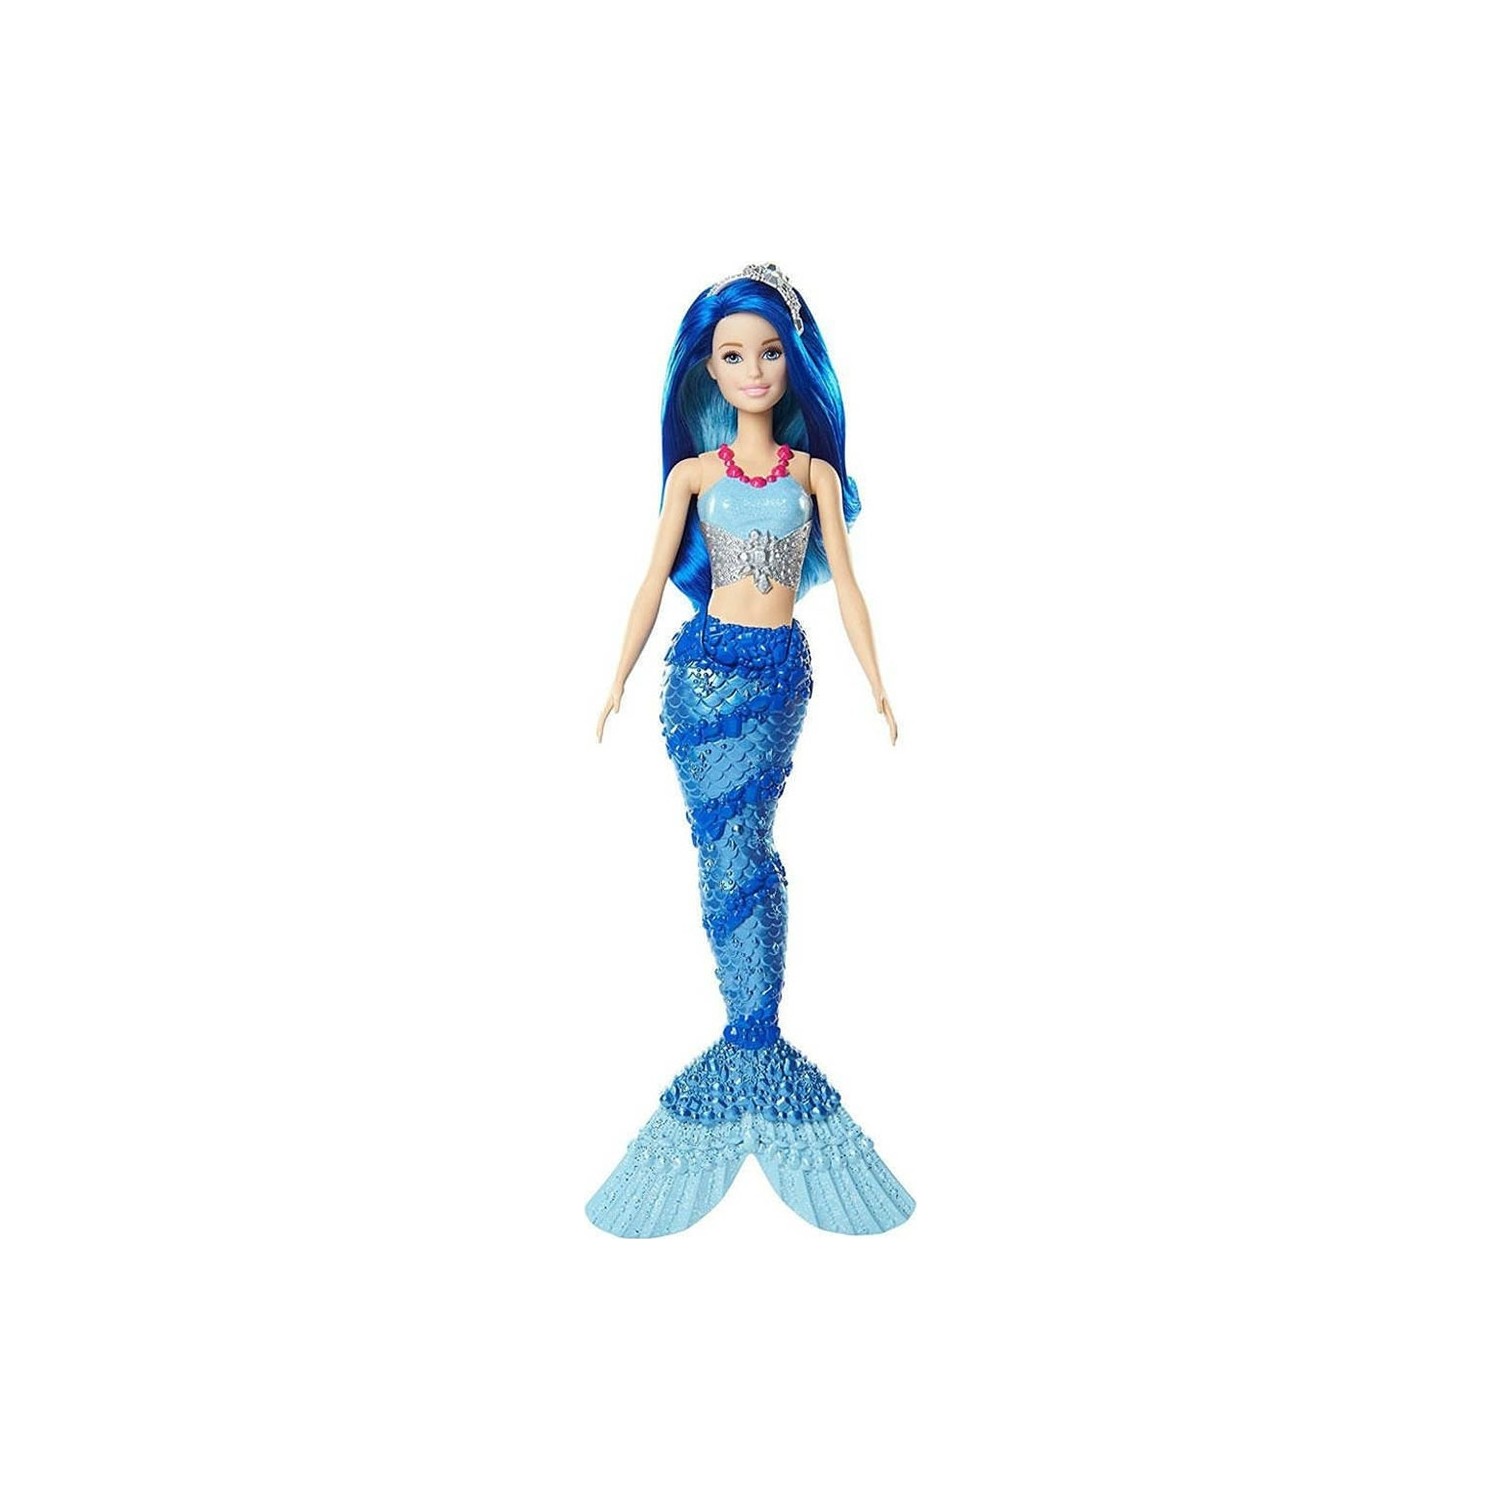 Кукла Barbie Dreamtopia Mermaid FJC92 куклы русалки barbie dreamtopia fxt08